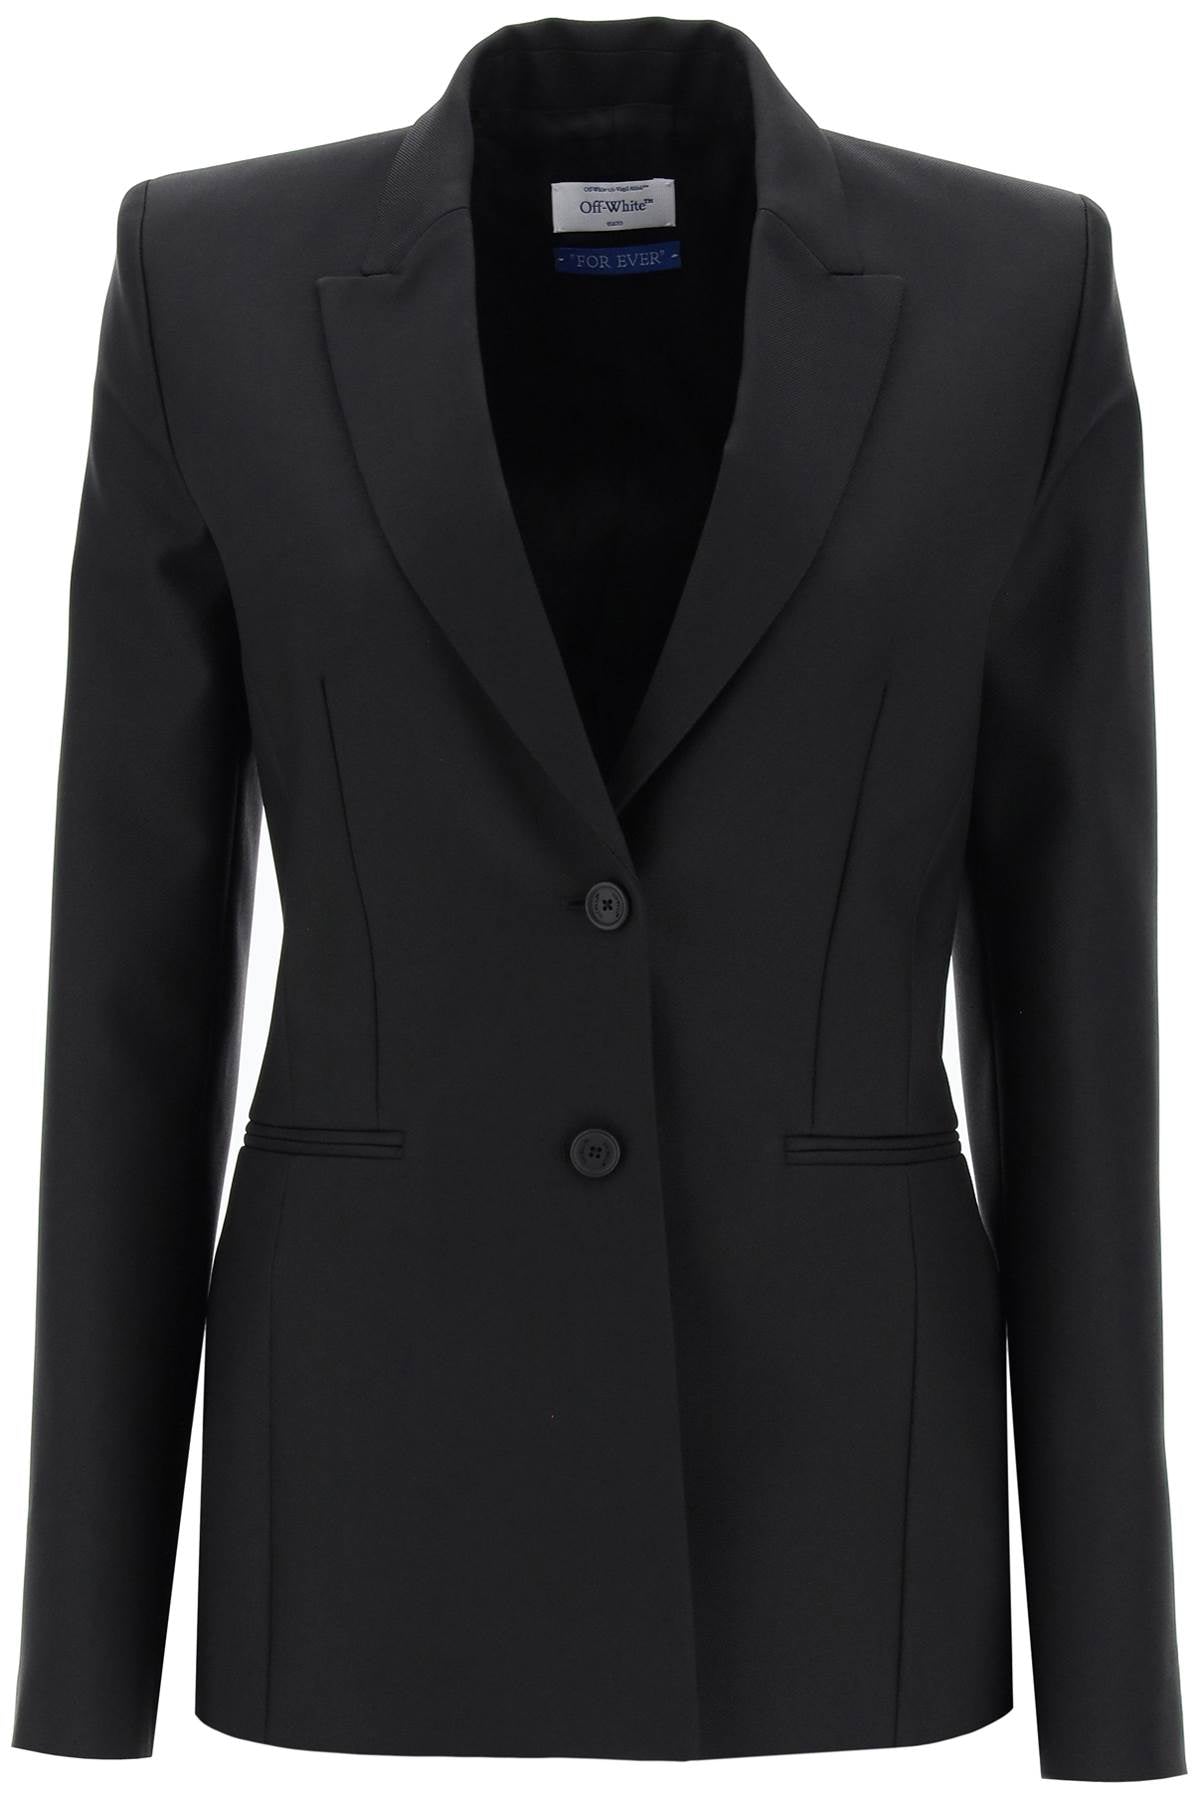 Áo jacket nữ OFF-WHITE màu đen dáng dài với cổ bẻ và thiết kế đơn giản